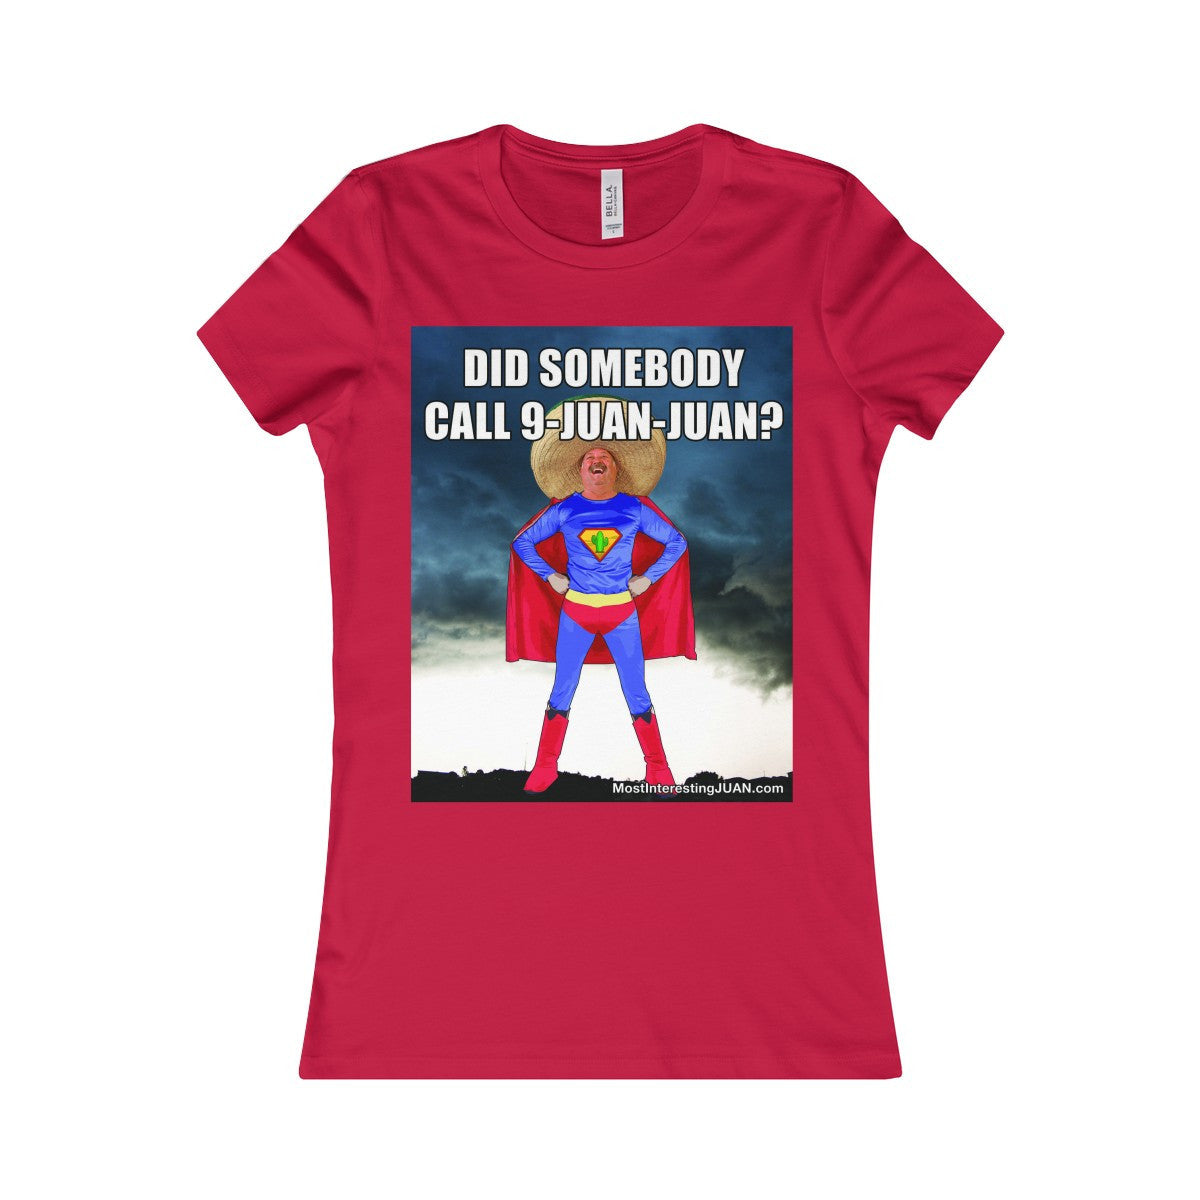 9-Juan-Juan - Women's T-shirt